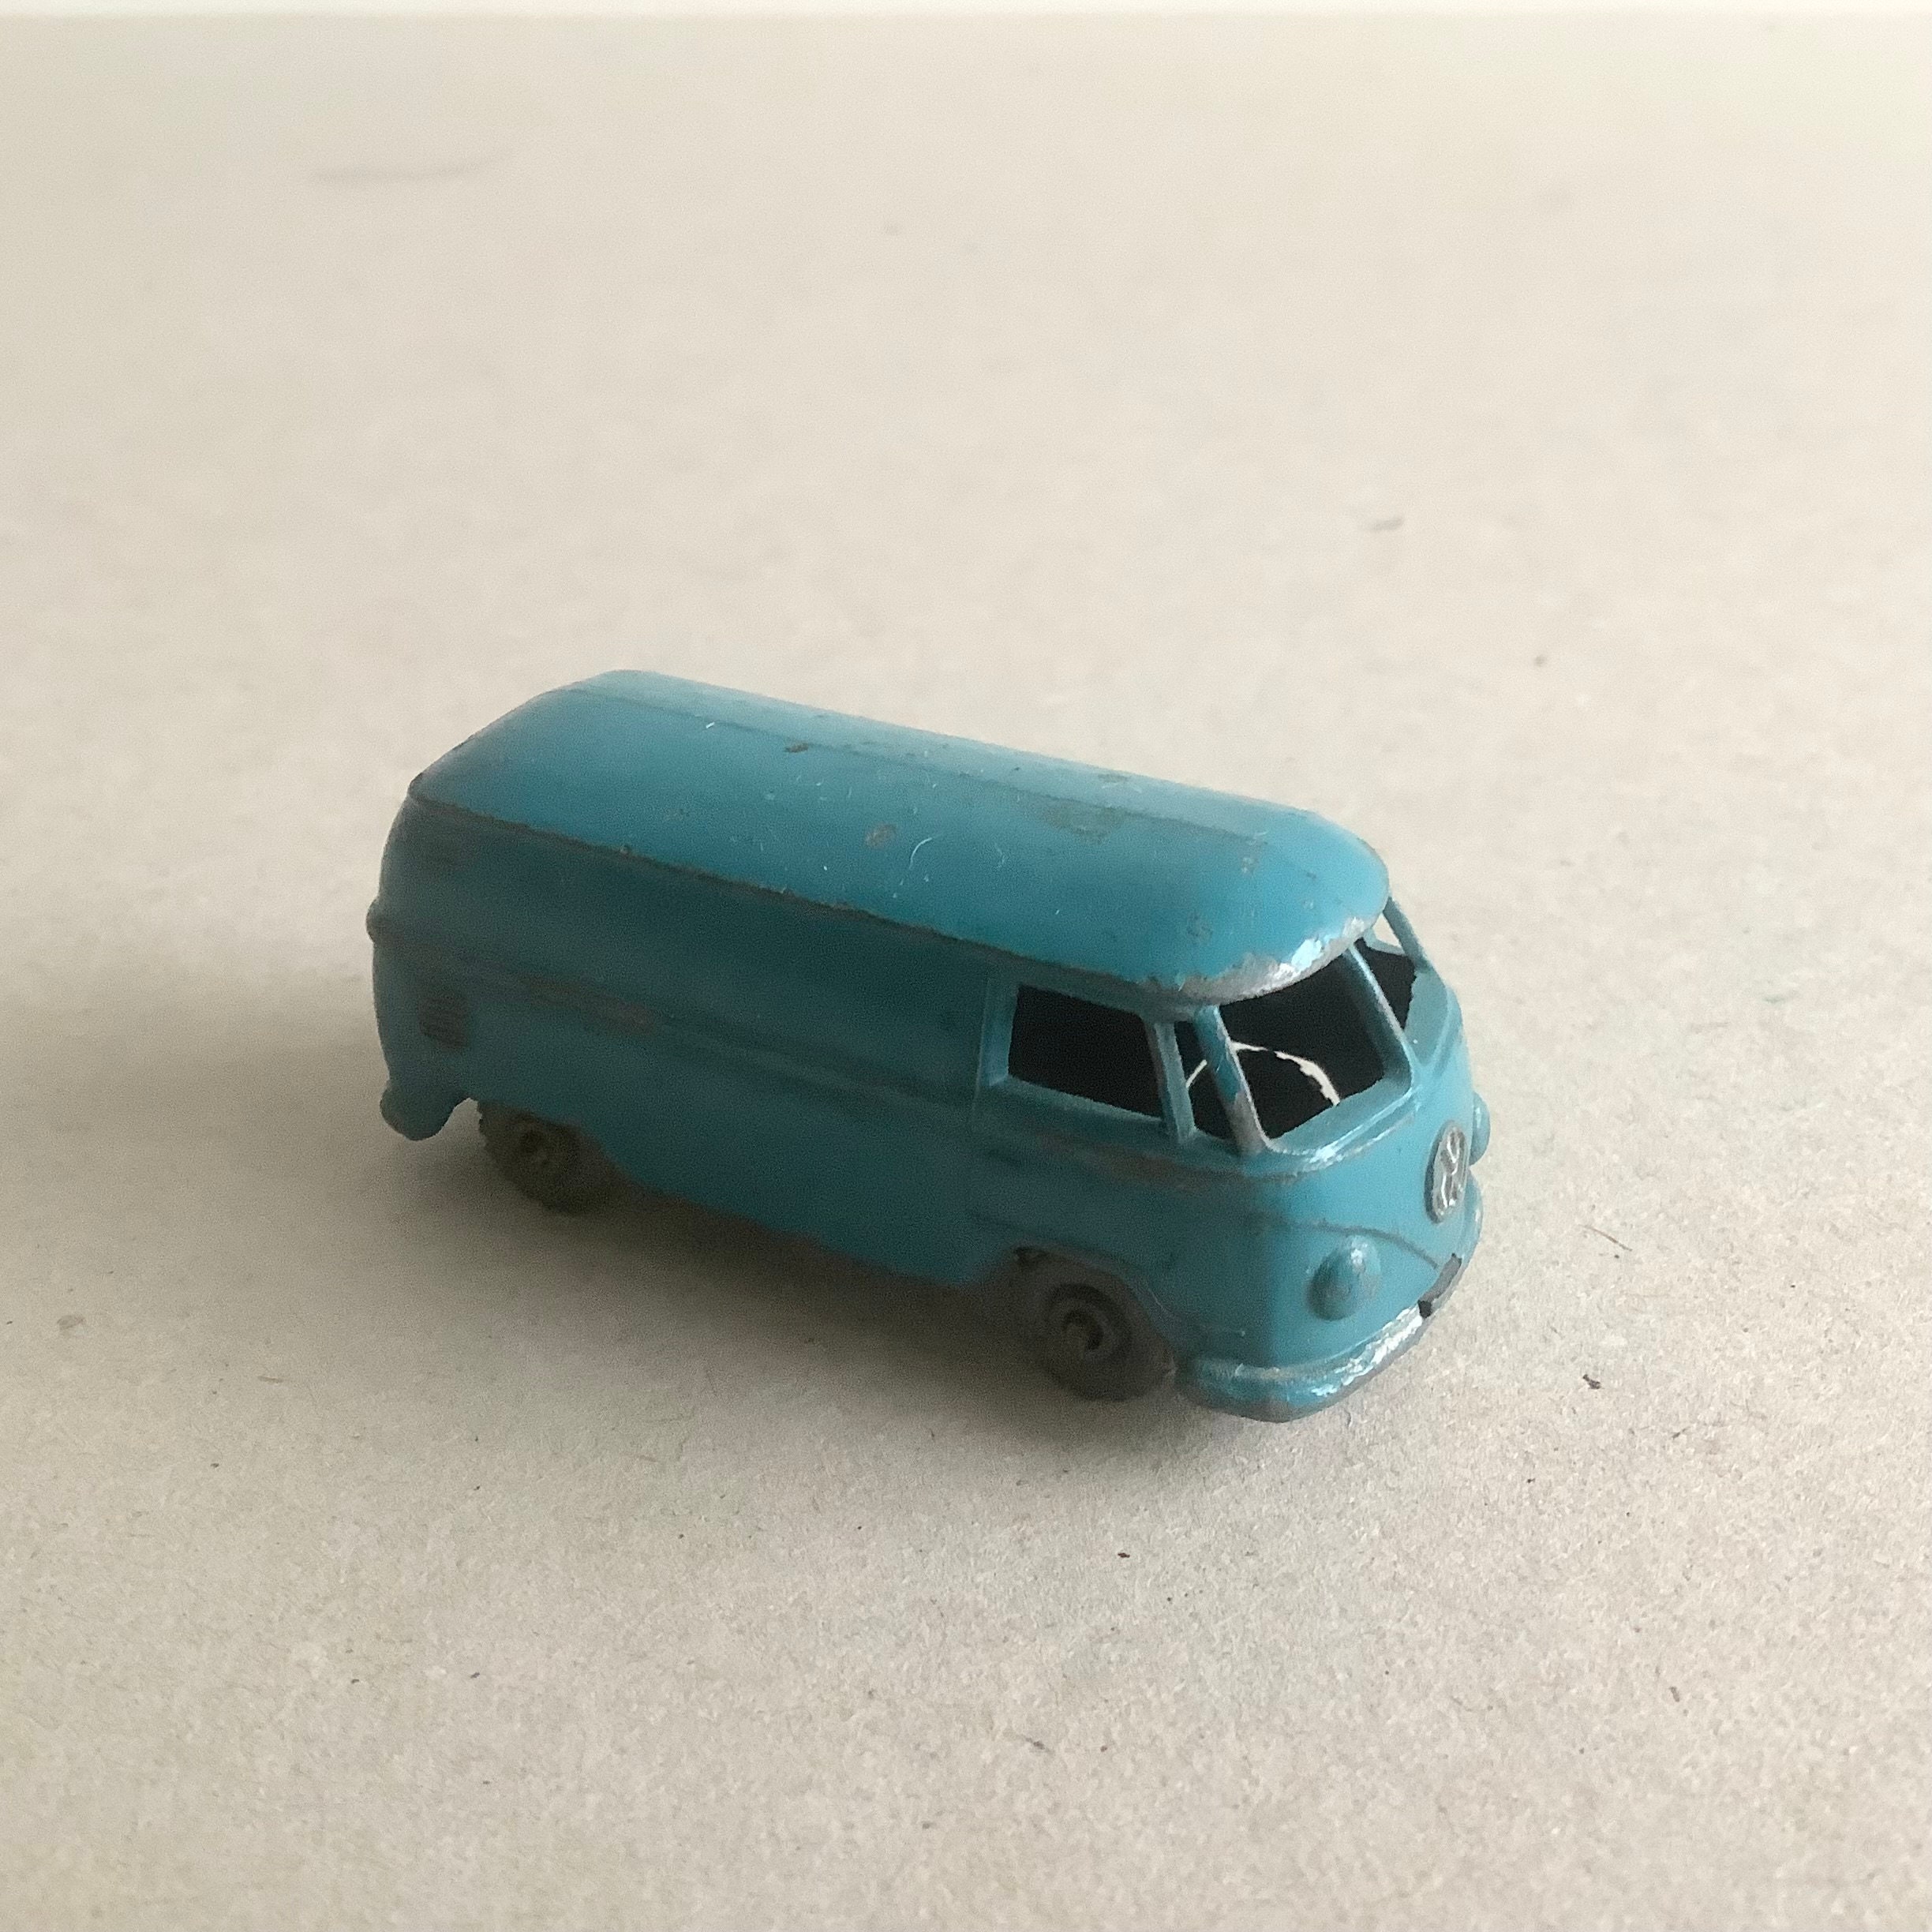 Toy Volkswagen Bus -  Sweden